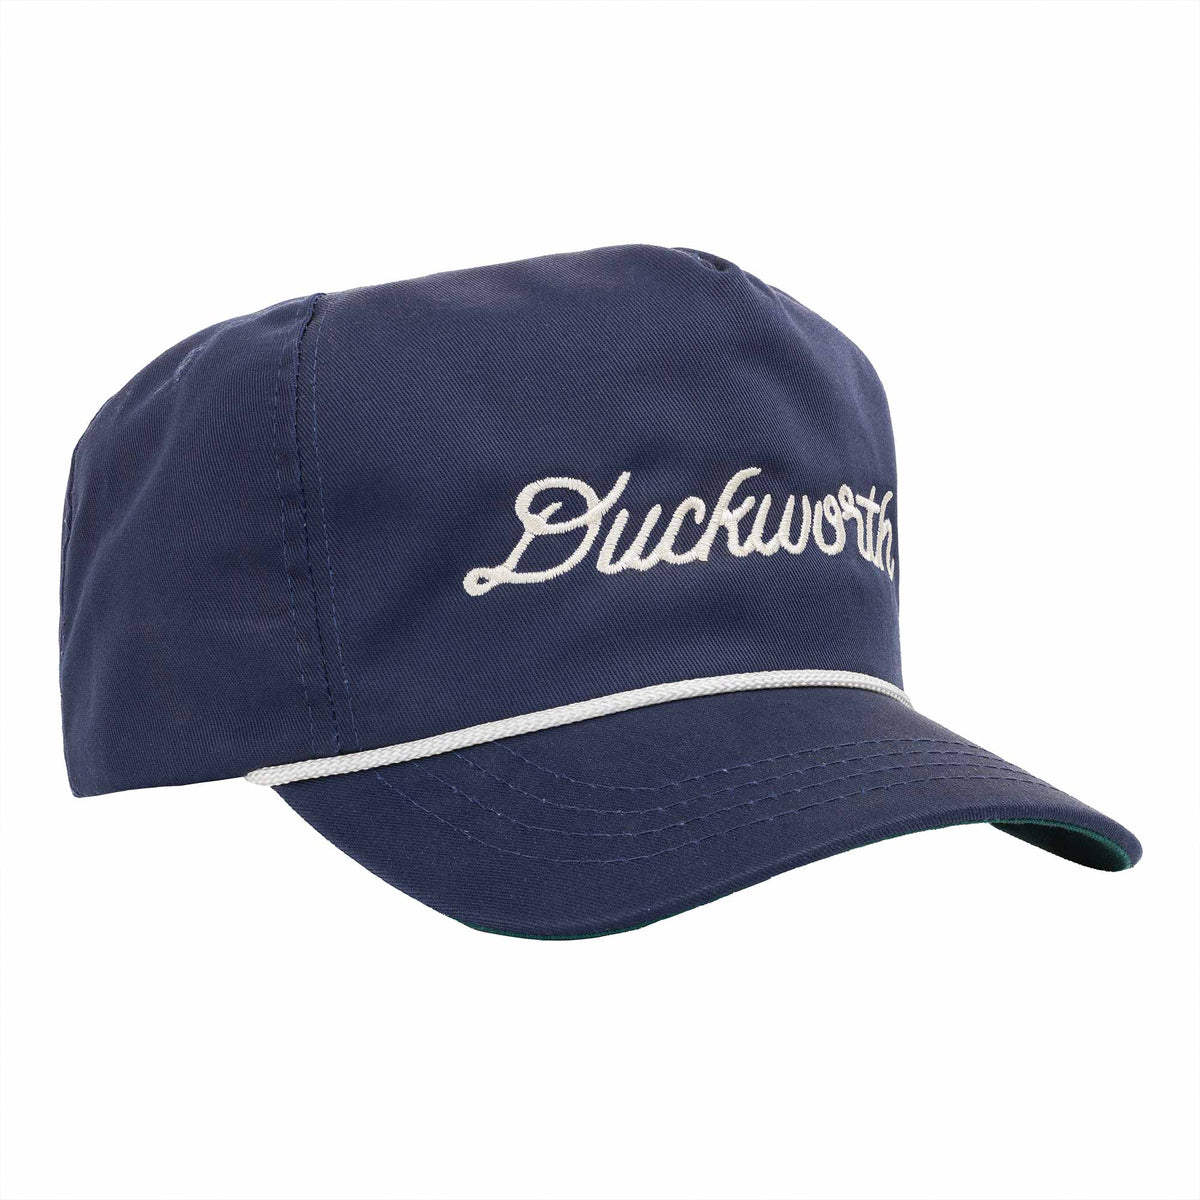 John Deere Women's Light Blue Cotton Baseball Cap at